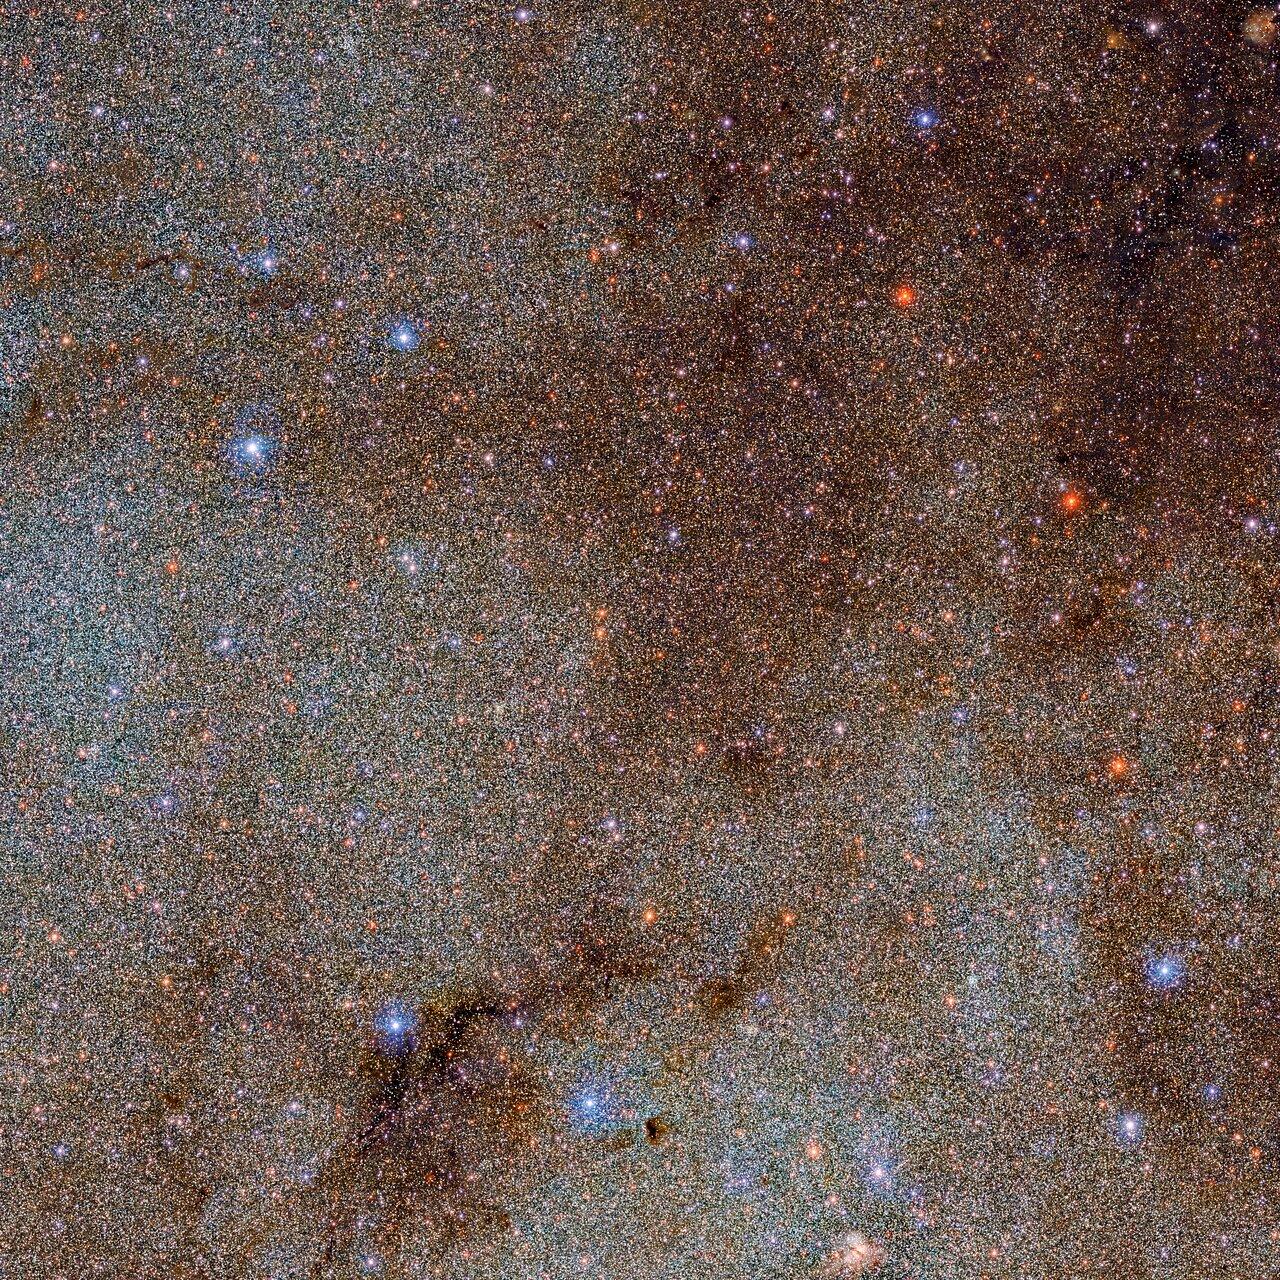 Cette image, qui regorge d'étoiles et de nuages de poussière sombres, n'est qu'un petit extrait – une tête d'épingle! – de l'ensemble de l'étude DECaPS2 (Dark Energy Camera Plane Survey) de la Voie lactée. [DECaPS2/DOE/FNAL/DECam/CTIO/NOIRLab/NSF/AURA - M. Zamani & D. de Martin (NSF’s NOIRLab)]